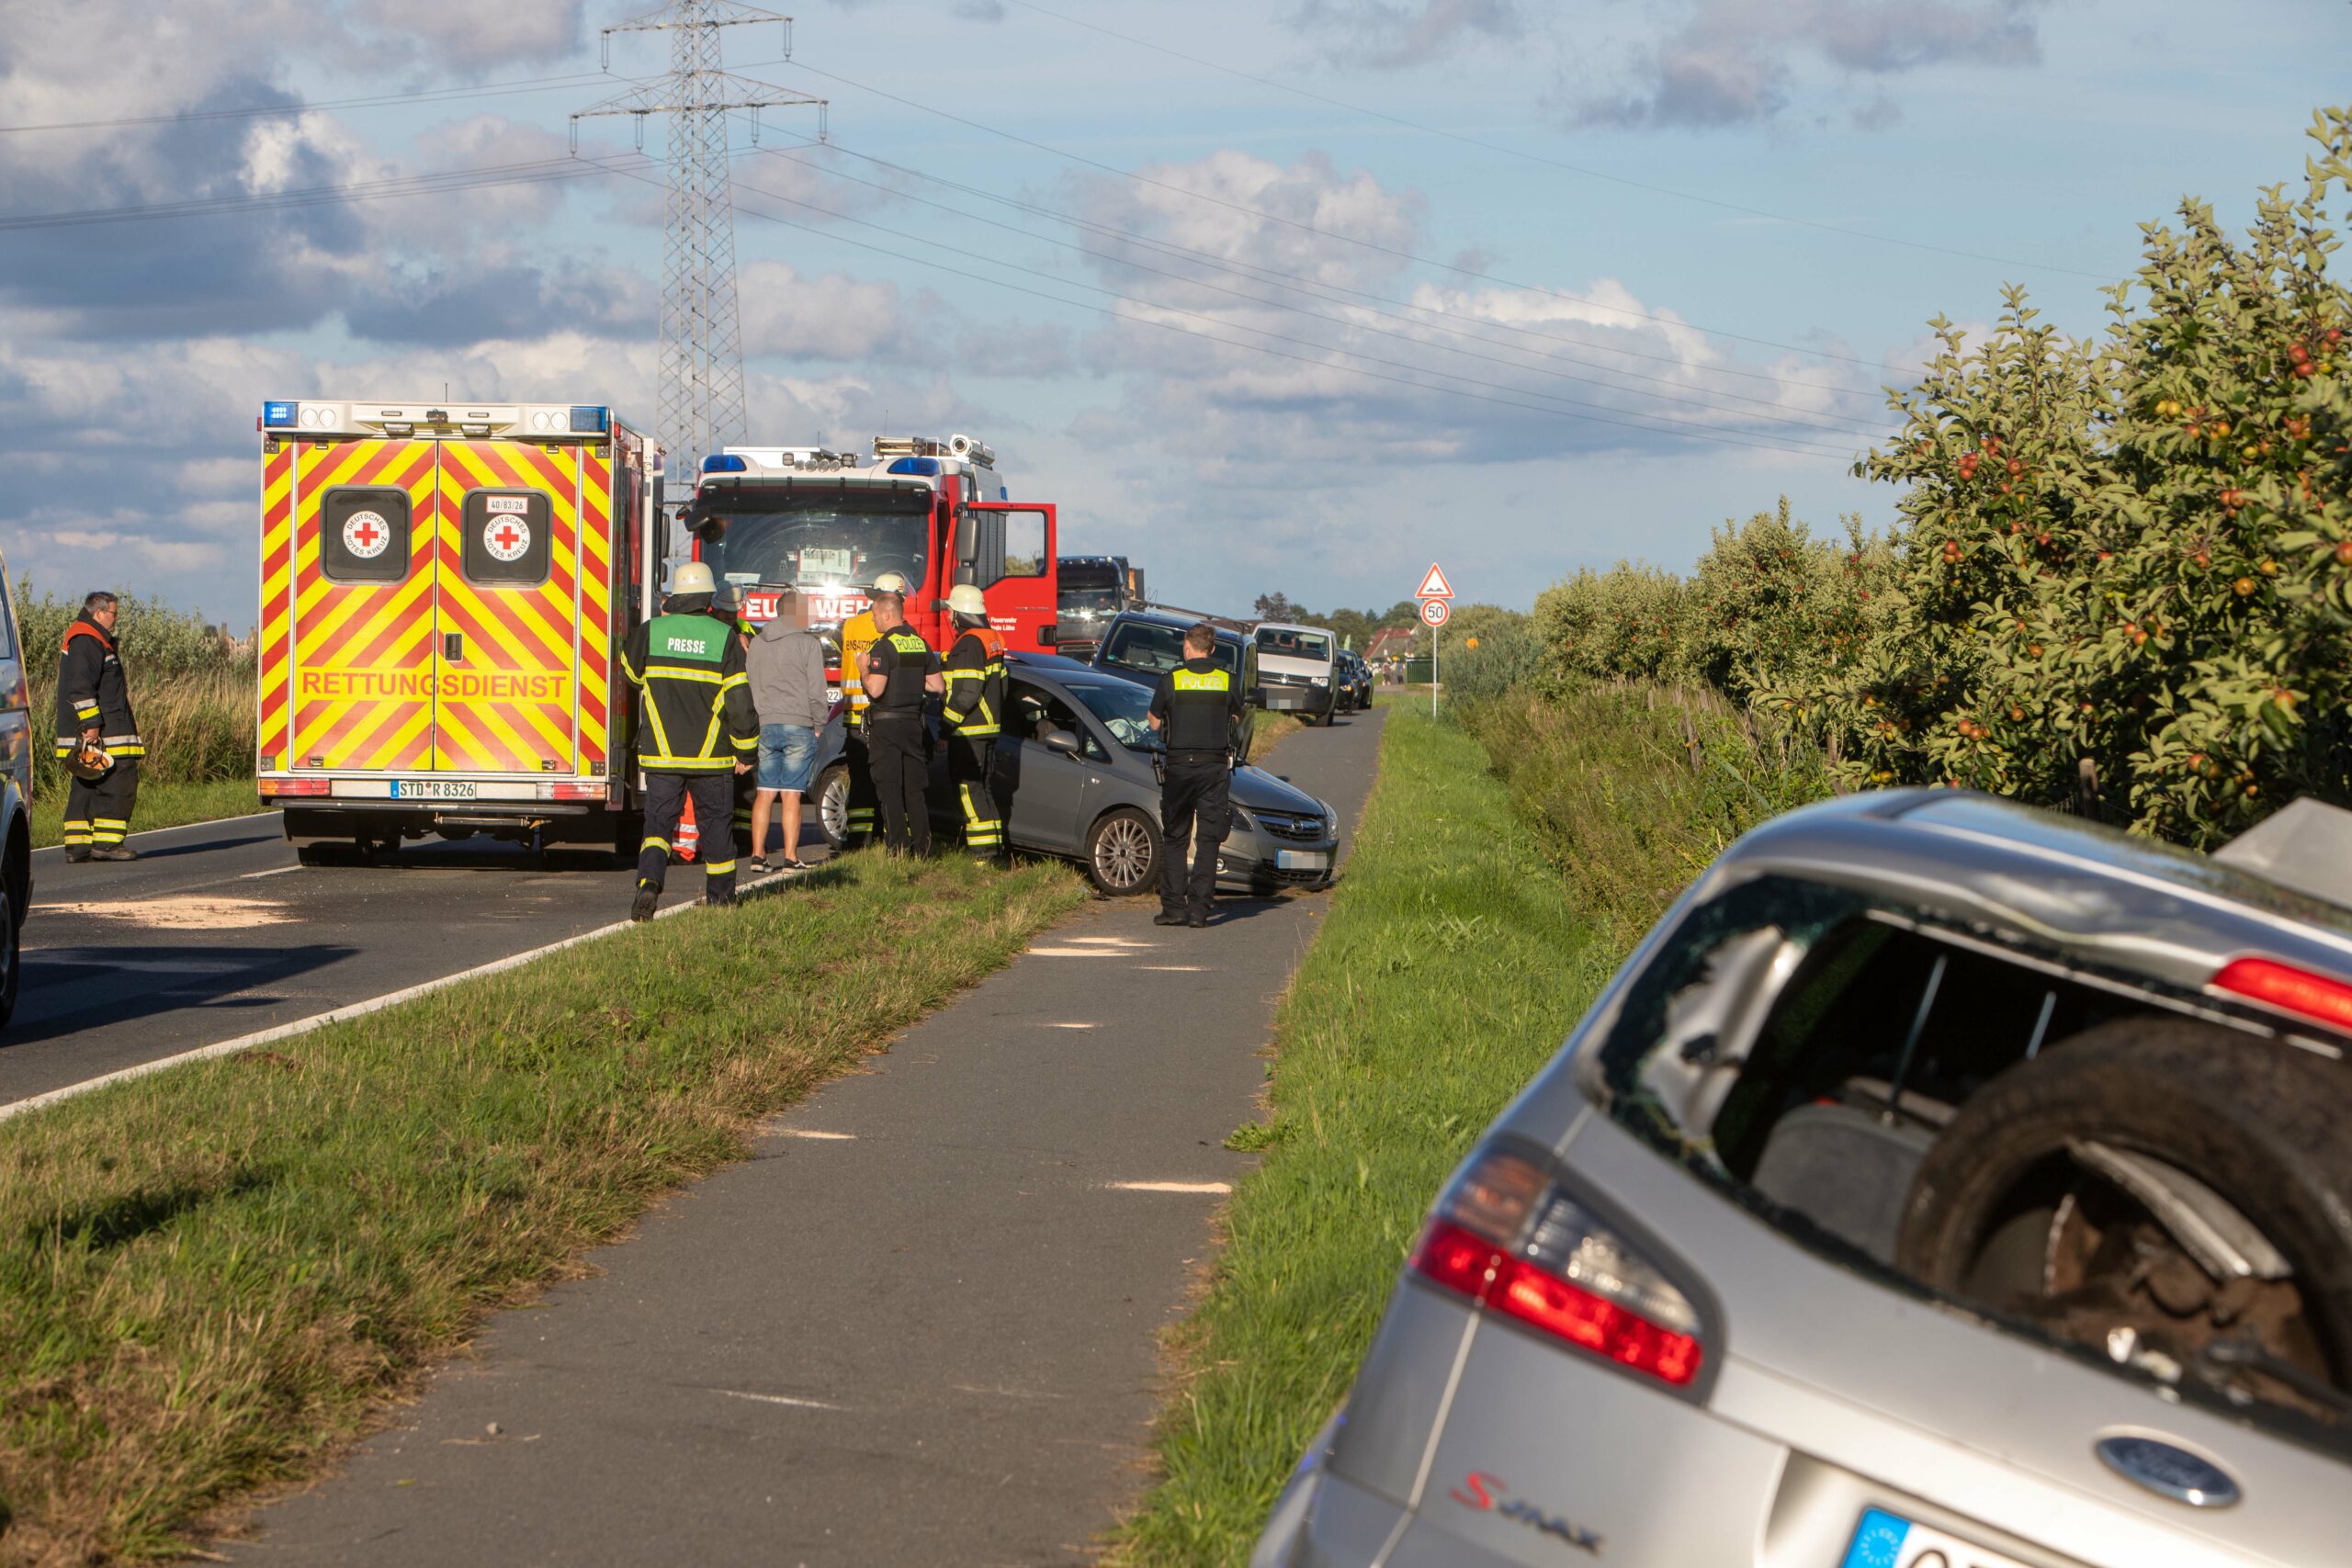 Unfall auf Landstraße bei Hamburg – vier Verletzte, darunter zwei Kinder